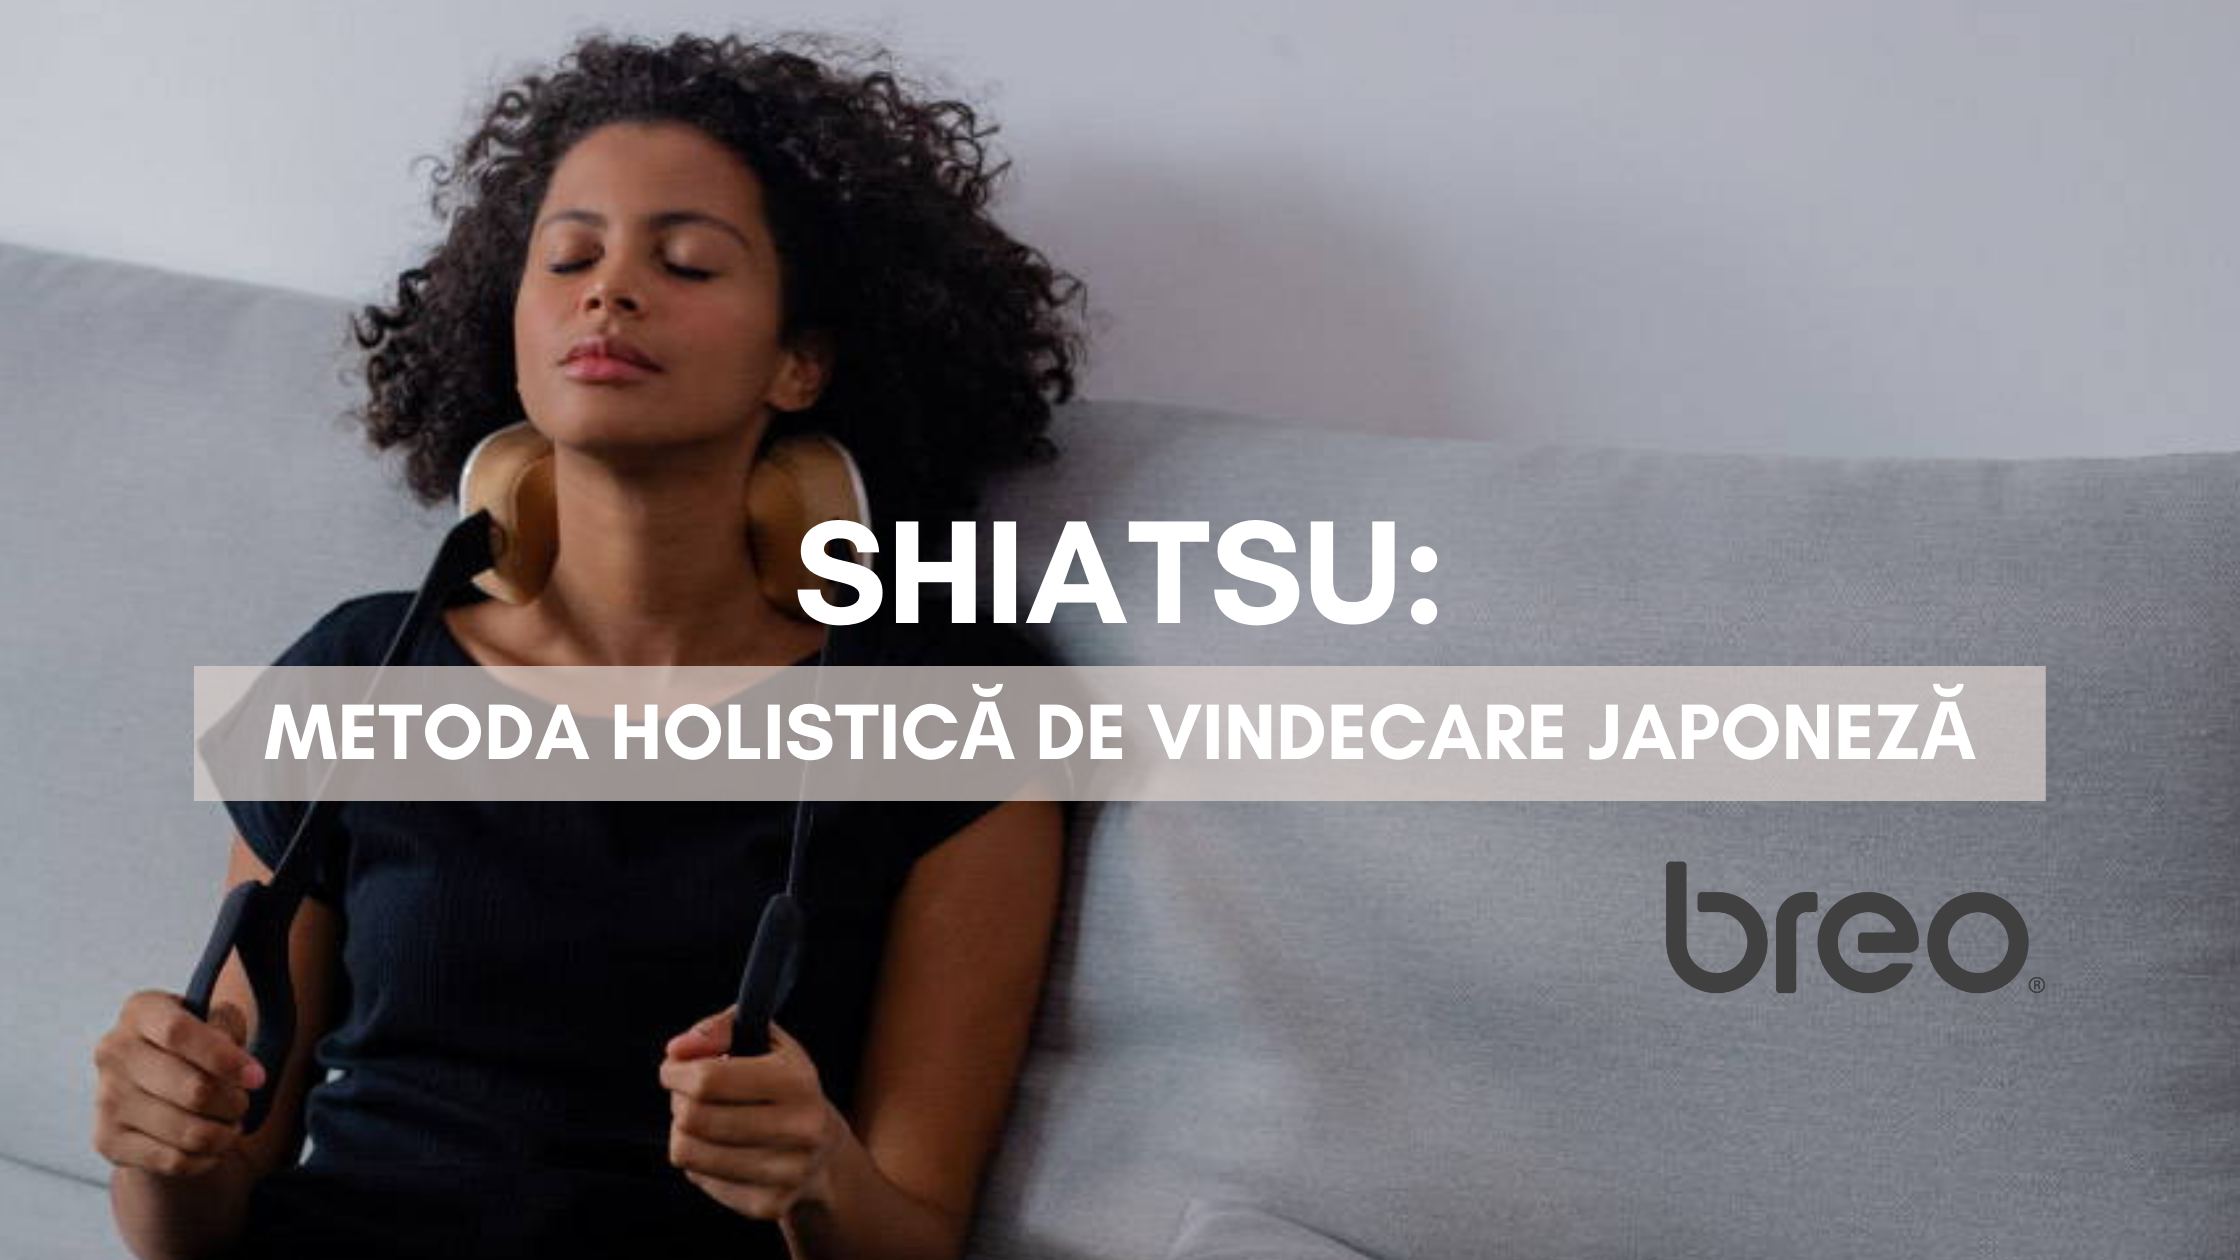 Shiatsu: metoda holistică de vindecare Japoneză